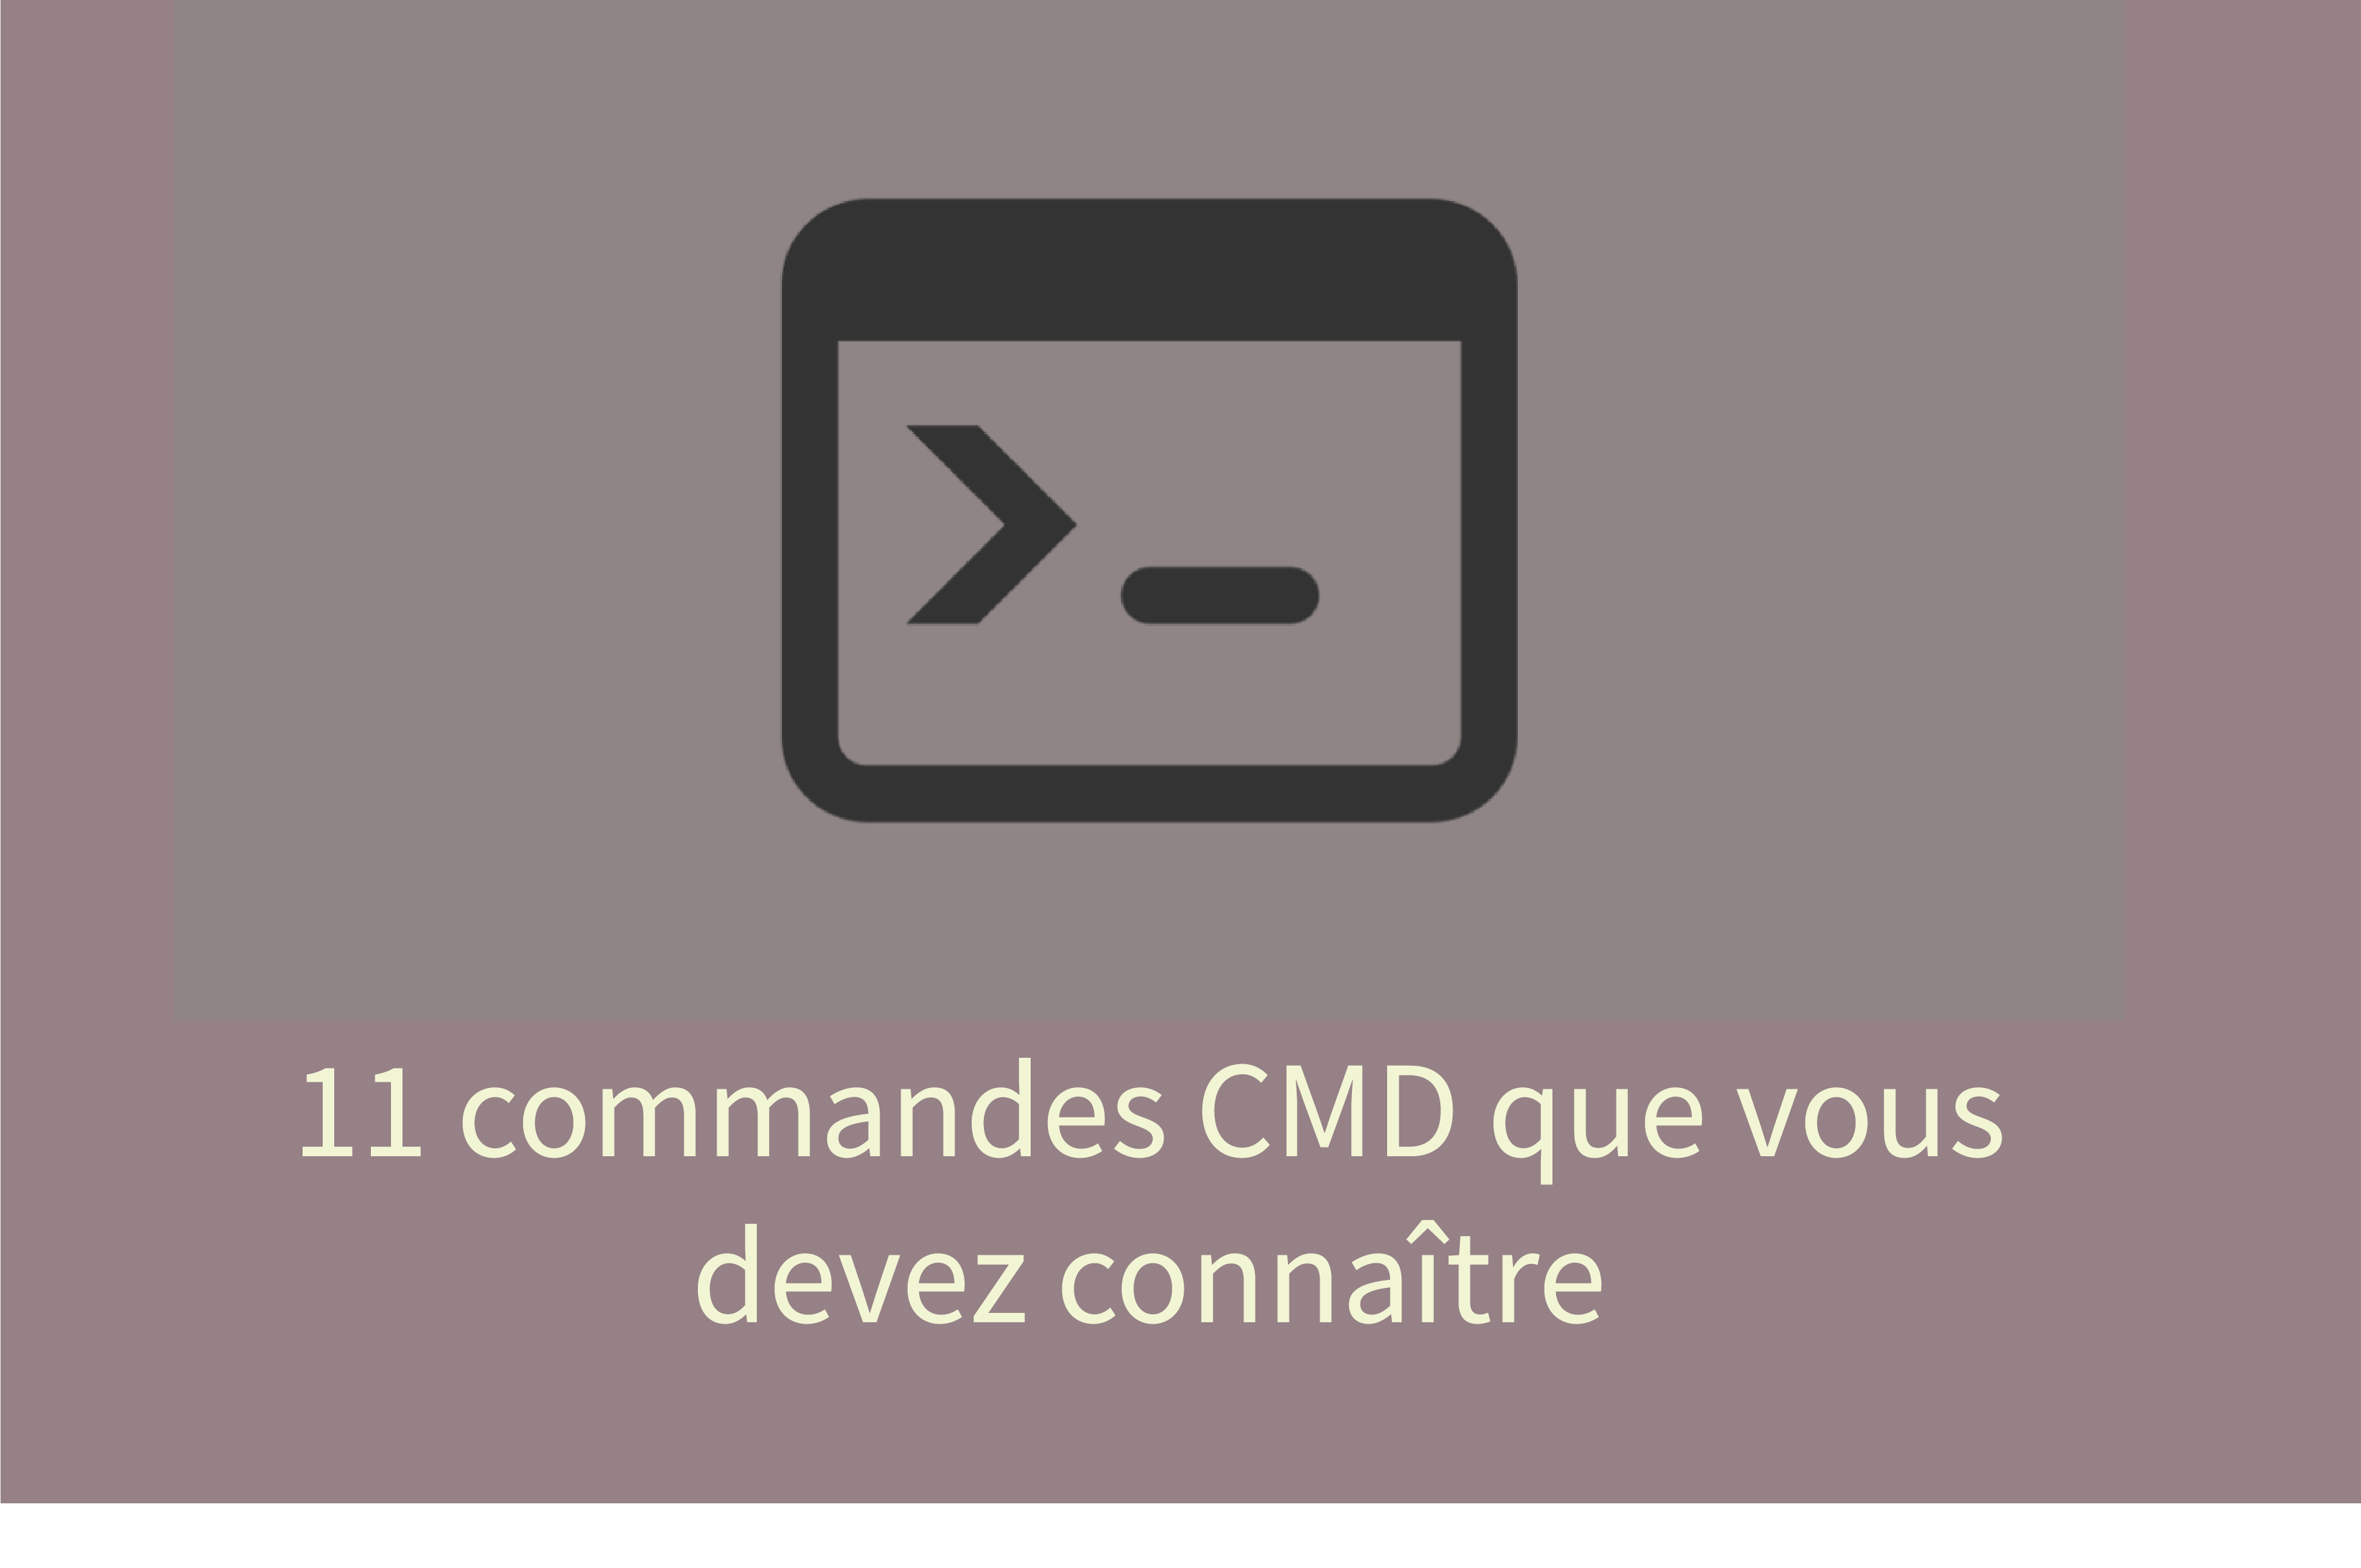 Commandes CMD